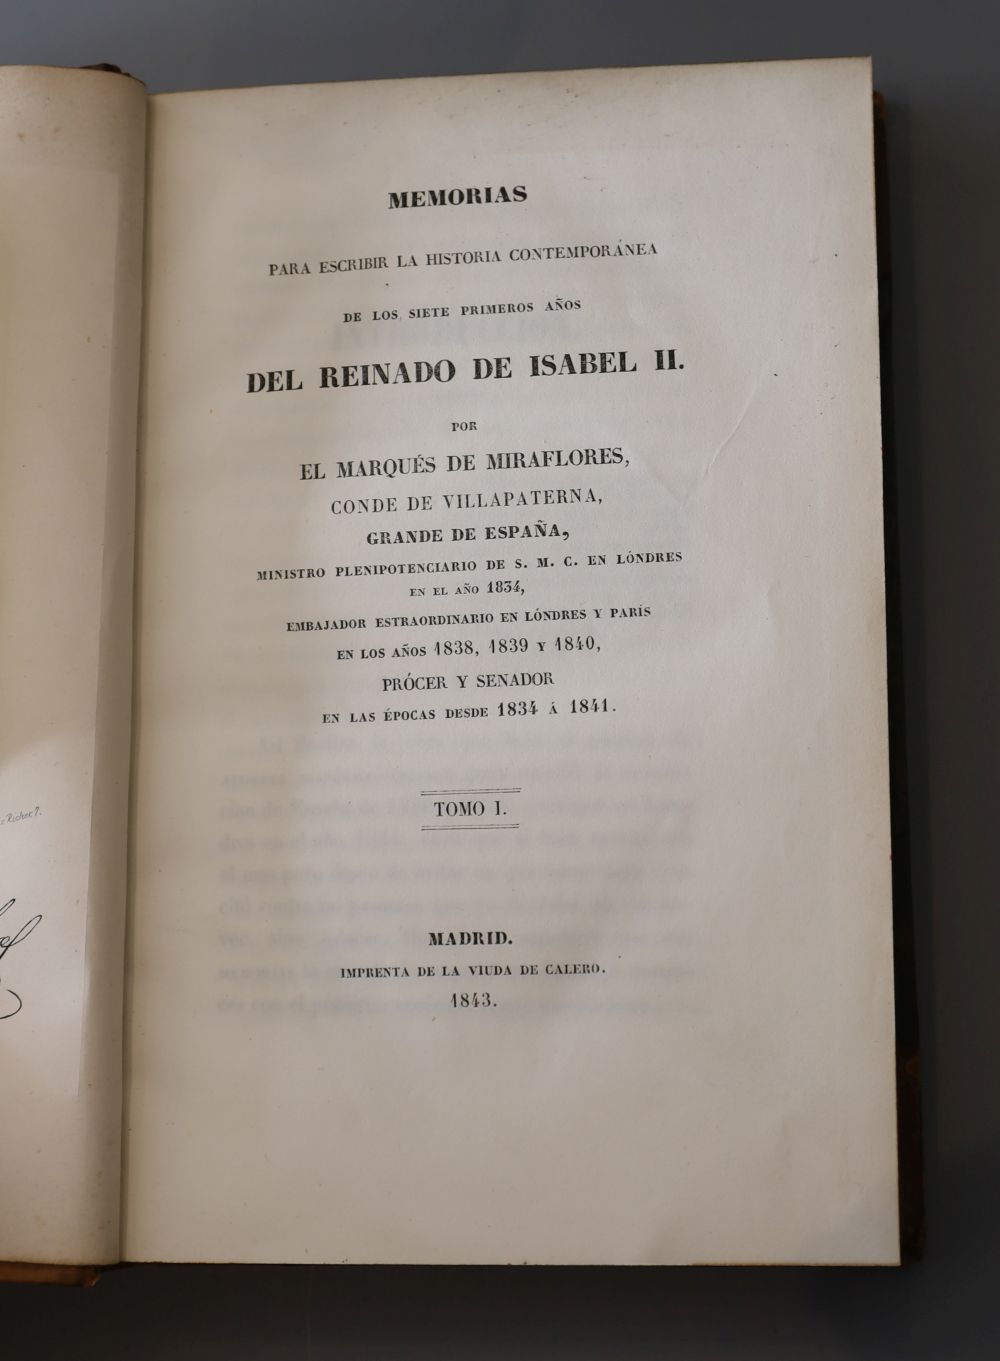 Miraflores, Manuel Pando Fernandez de Penedo, marques de, 1792-1872. - Memorias para escriber la historia contemporanea …,